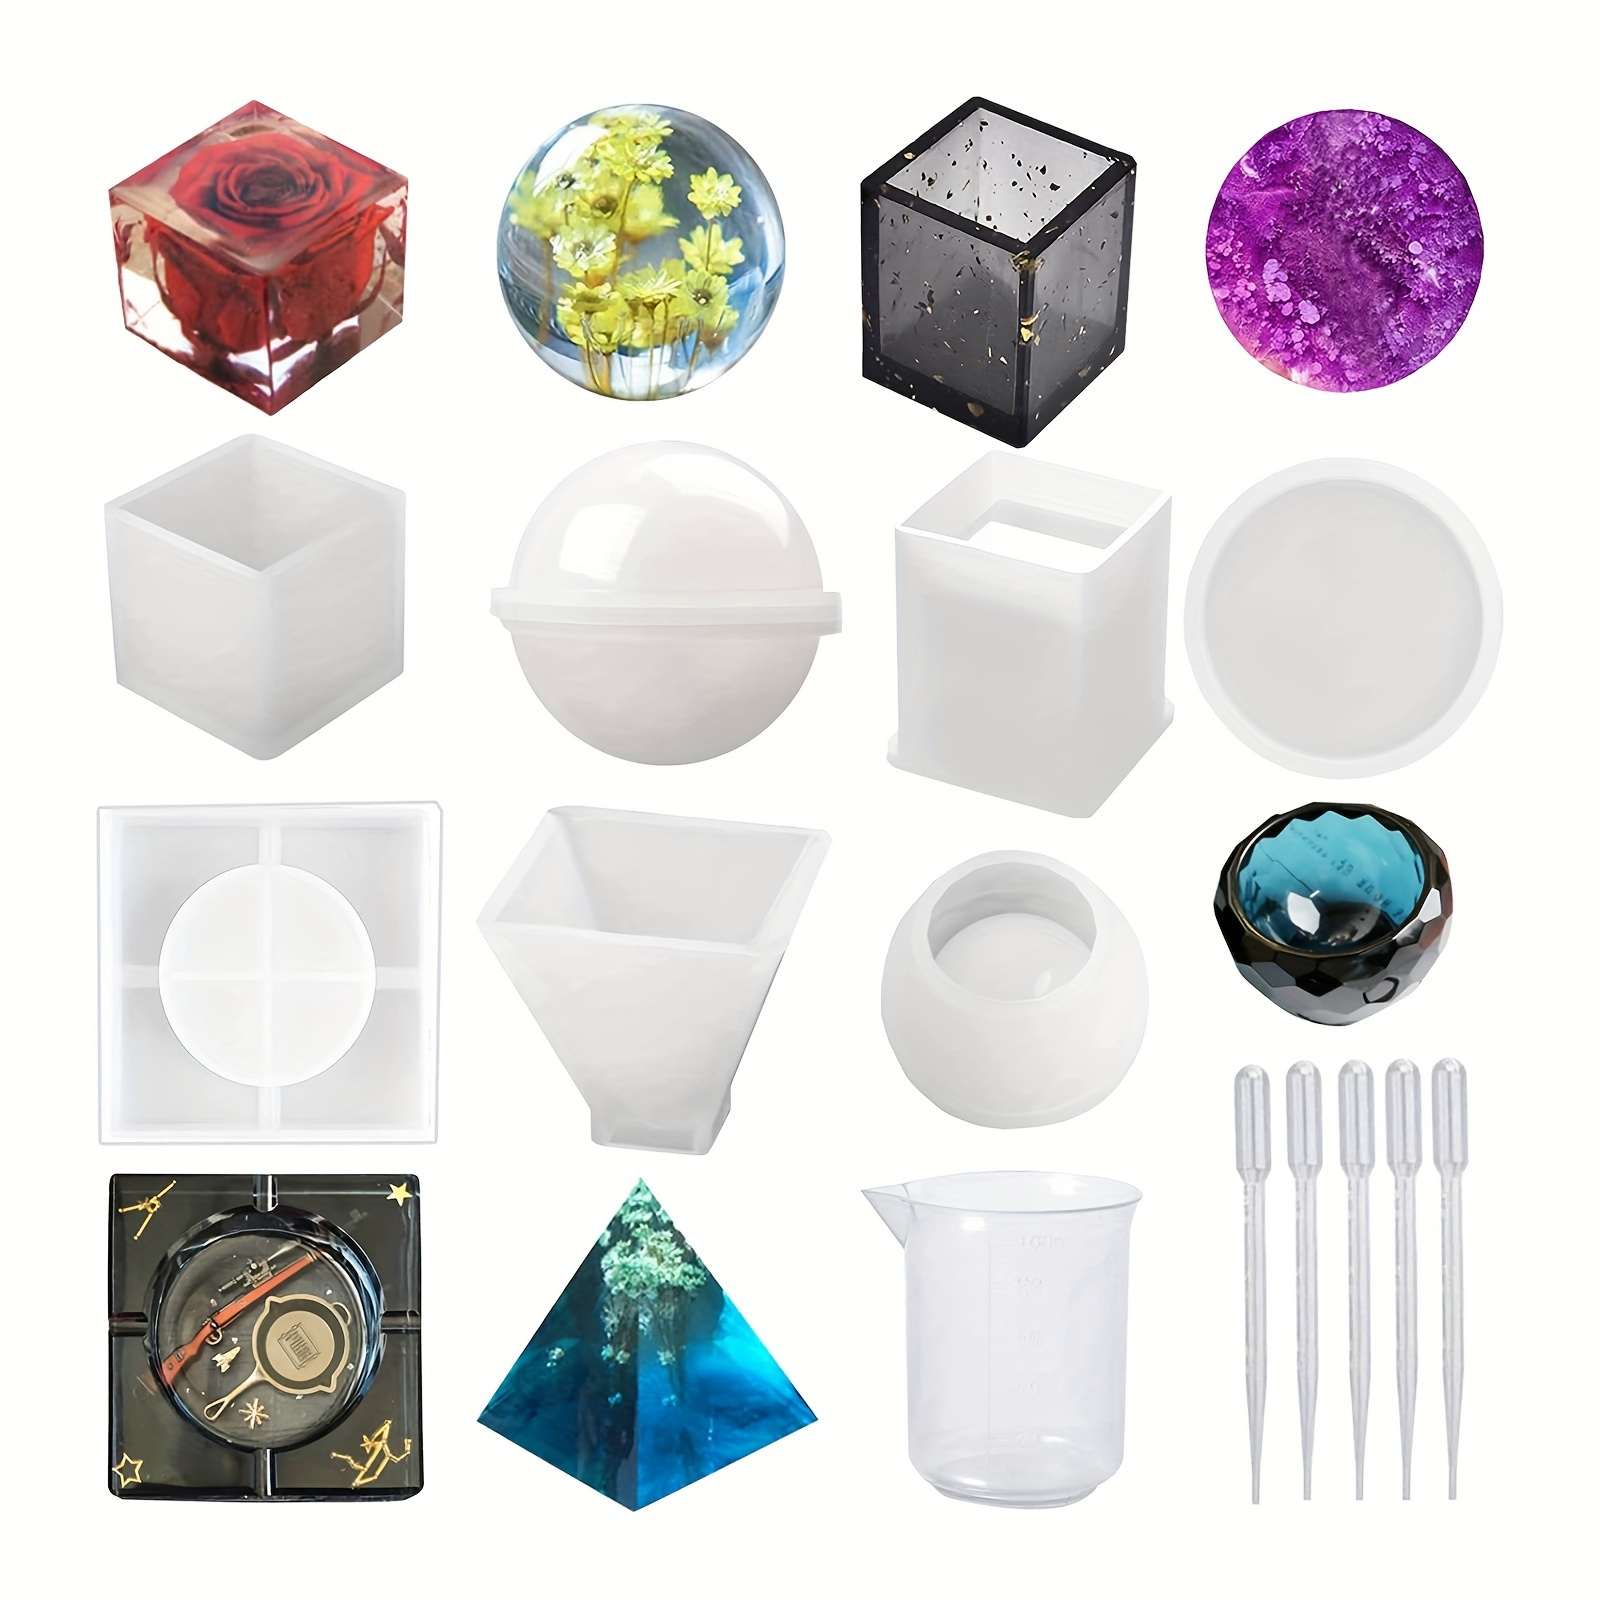 Moldes de resina de silicona, 5 moldes de fundición de resina, incluyendo  esfera, cubo, pirámide, cuadrado, redondo con 1 taza medidora y 5 pipetas  de